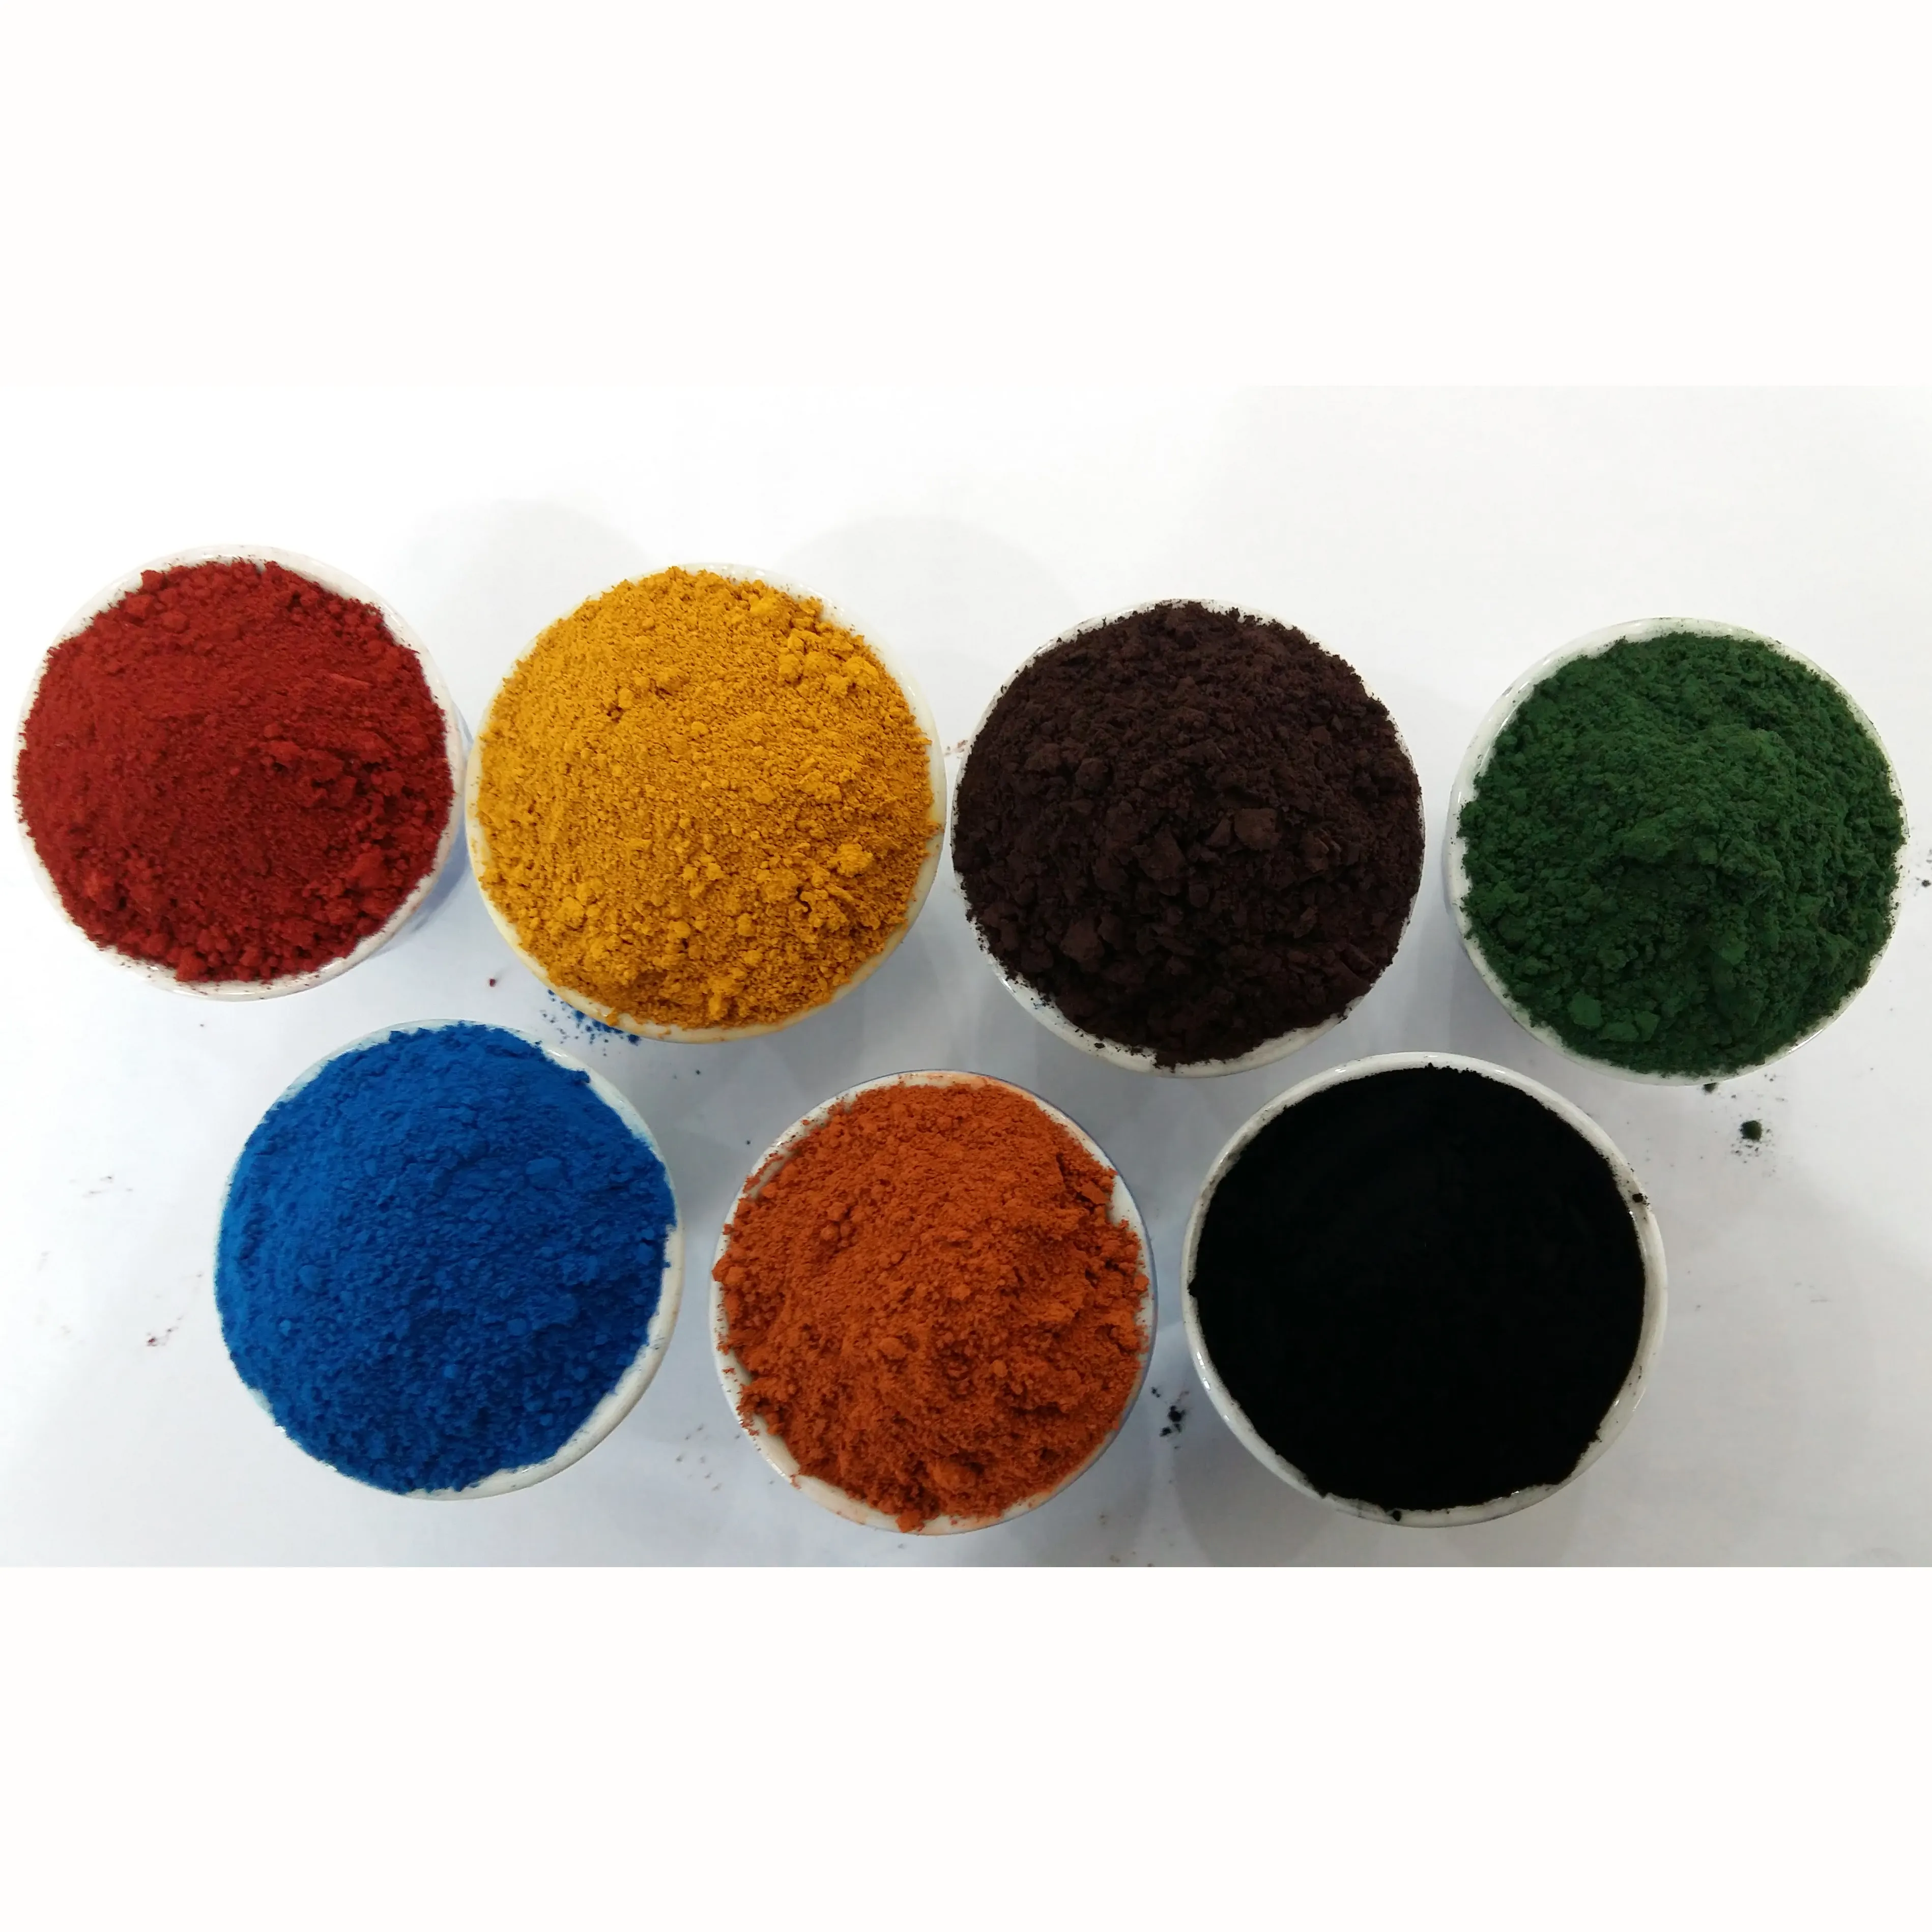 Demir oksit kırmızı/sarı/siyah/yeşil/mavi/kahverengi/turuncu toz boya/yağ /kiremit/tuğla/cam/tekne boya/çimento renk pigment